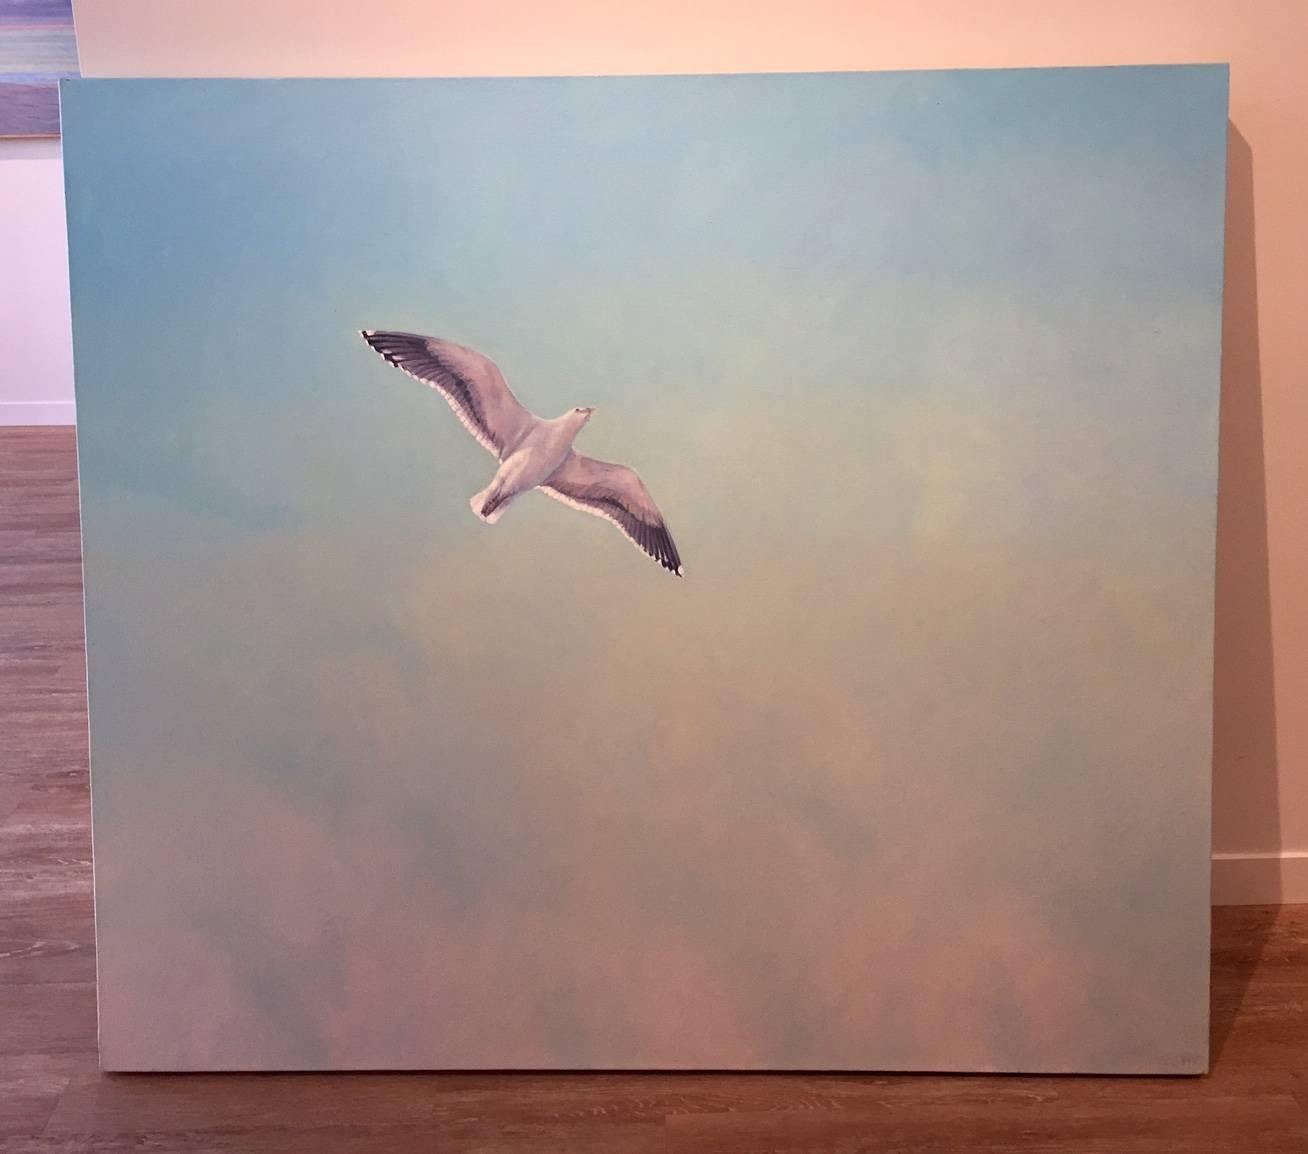 The Gull - Painting by Willard Dixon